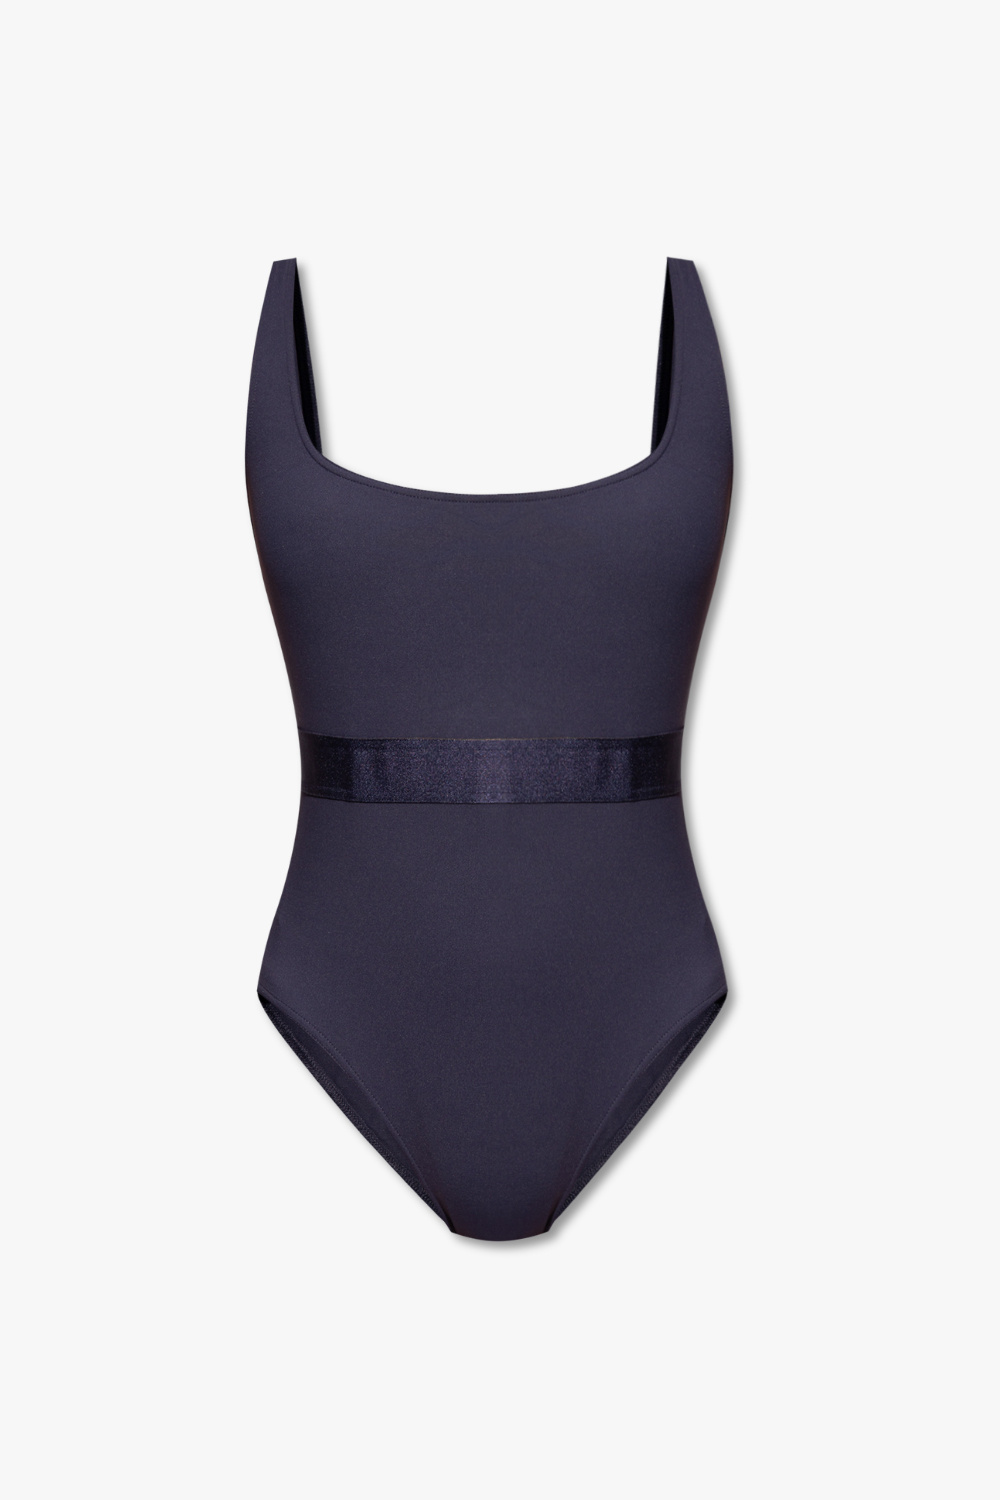 Eres ‘Privee’ one-piece swimsuit